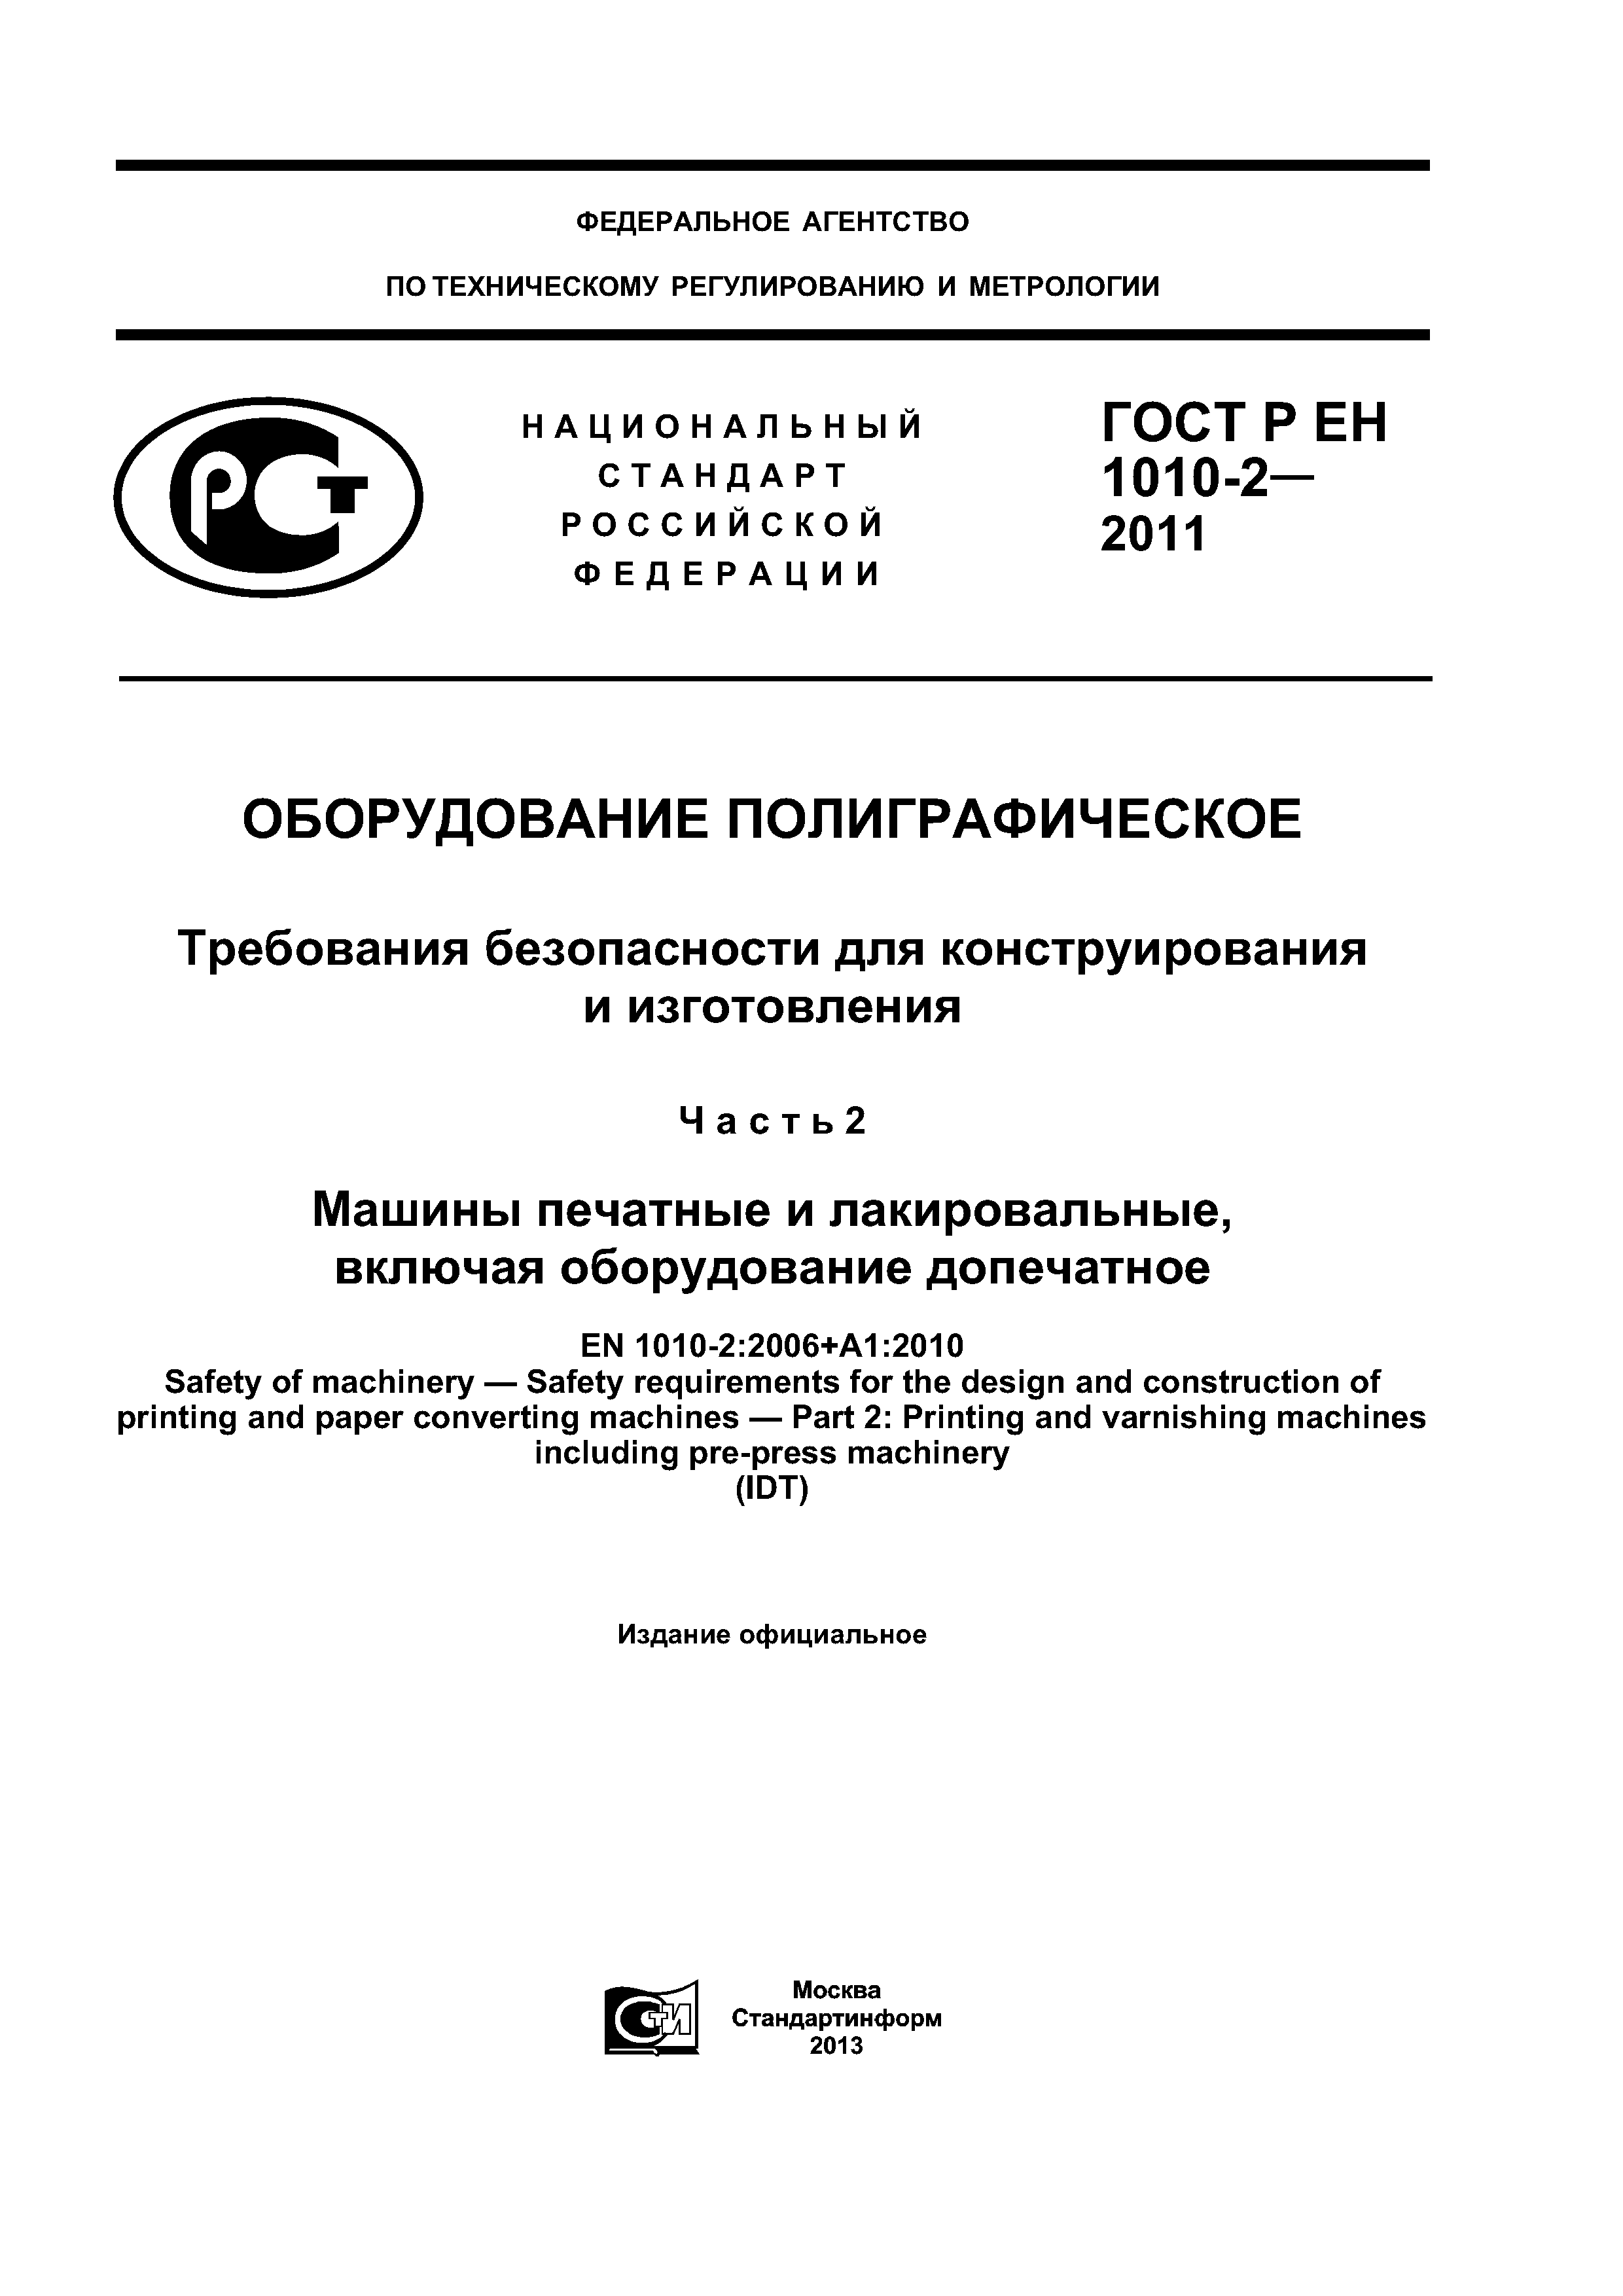 ГОСТ Р ЕН 1010-2-2011